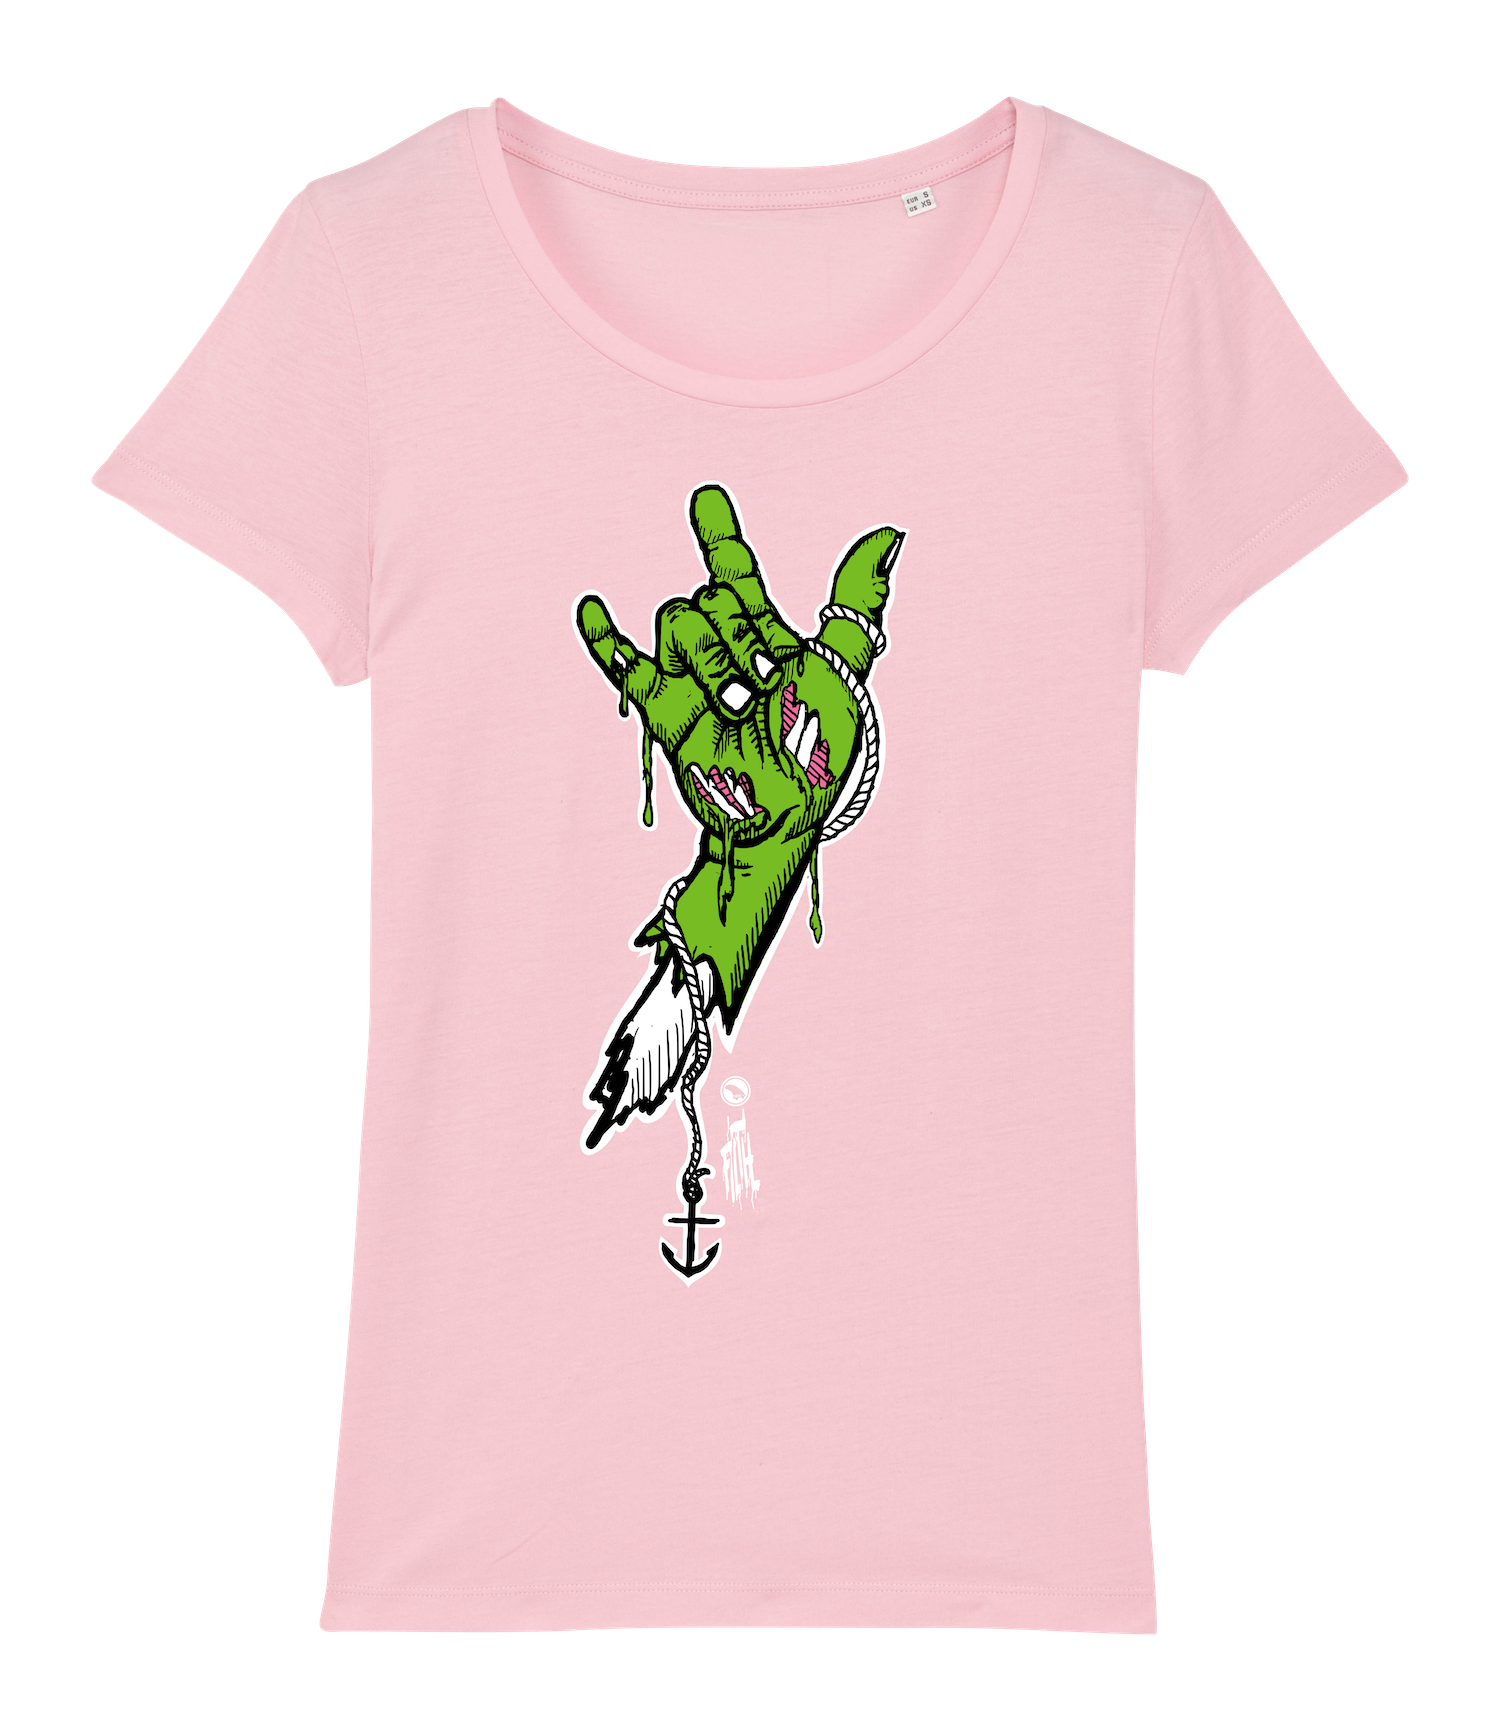 Surf t-shirt women, green rock hand on cotton pink T-shirt